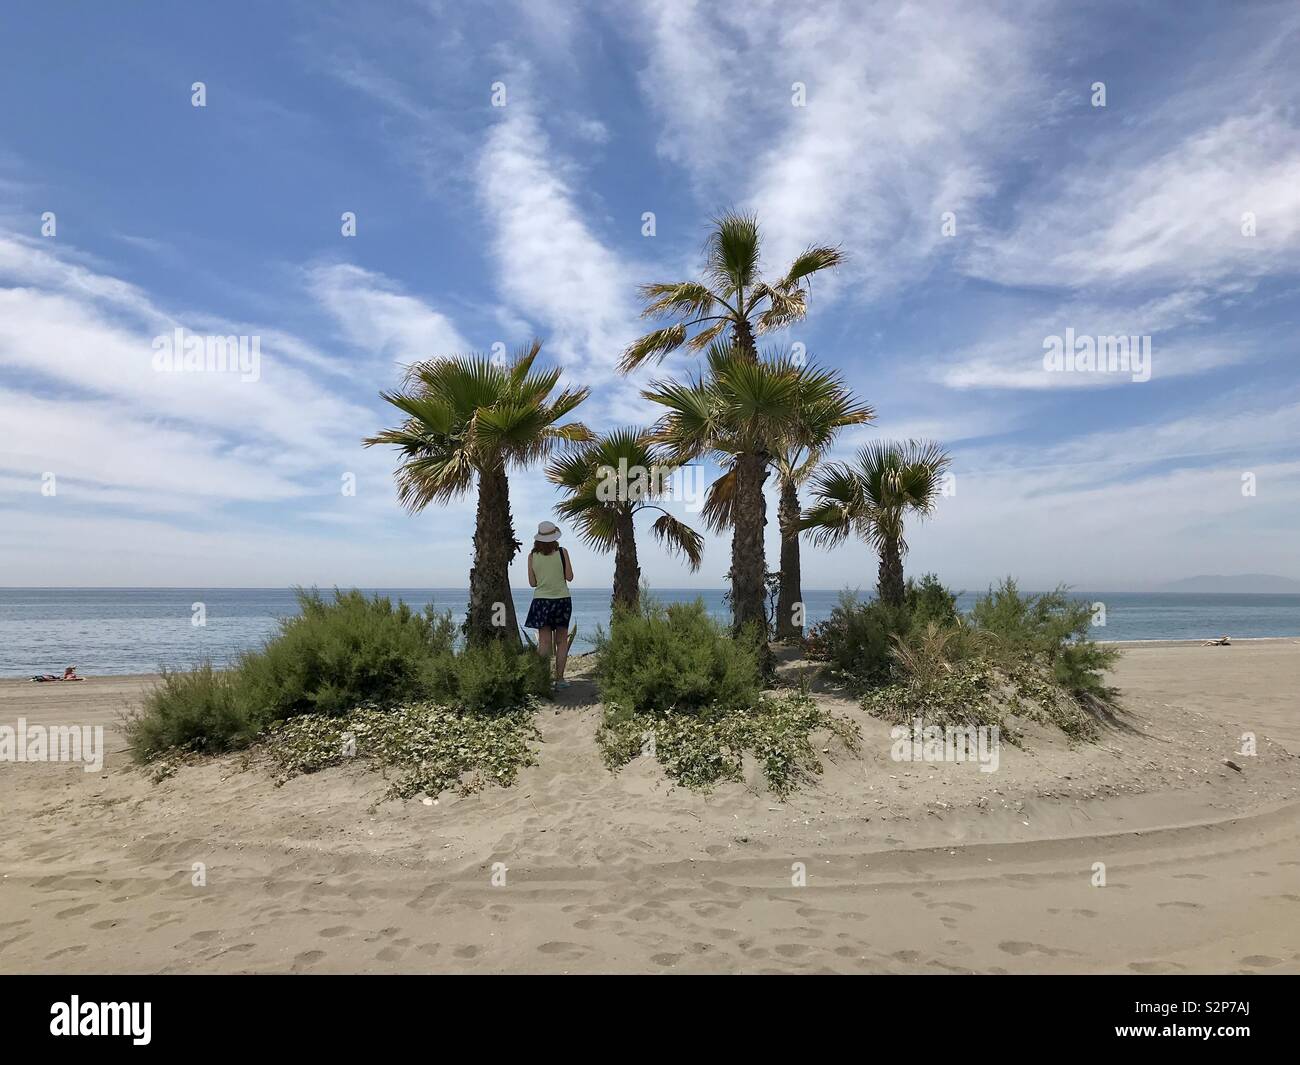 Una donna si erge tra alberi di palma guarda al mare. Foto Stock